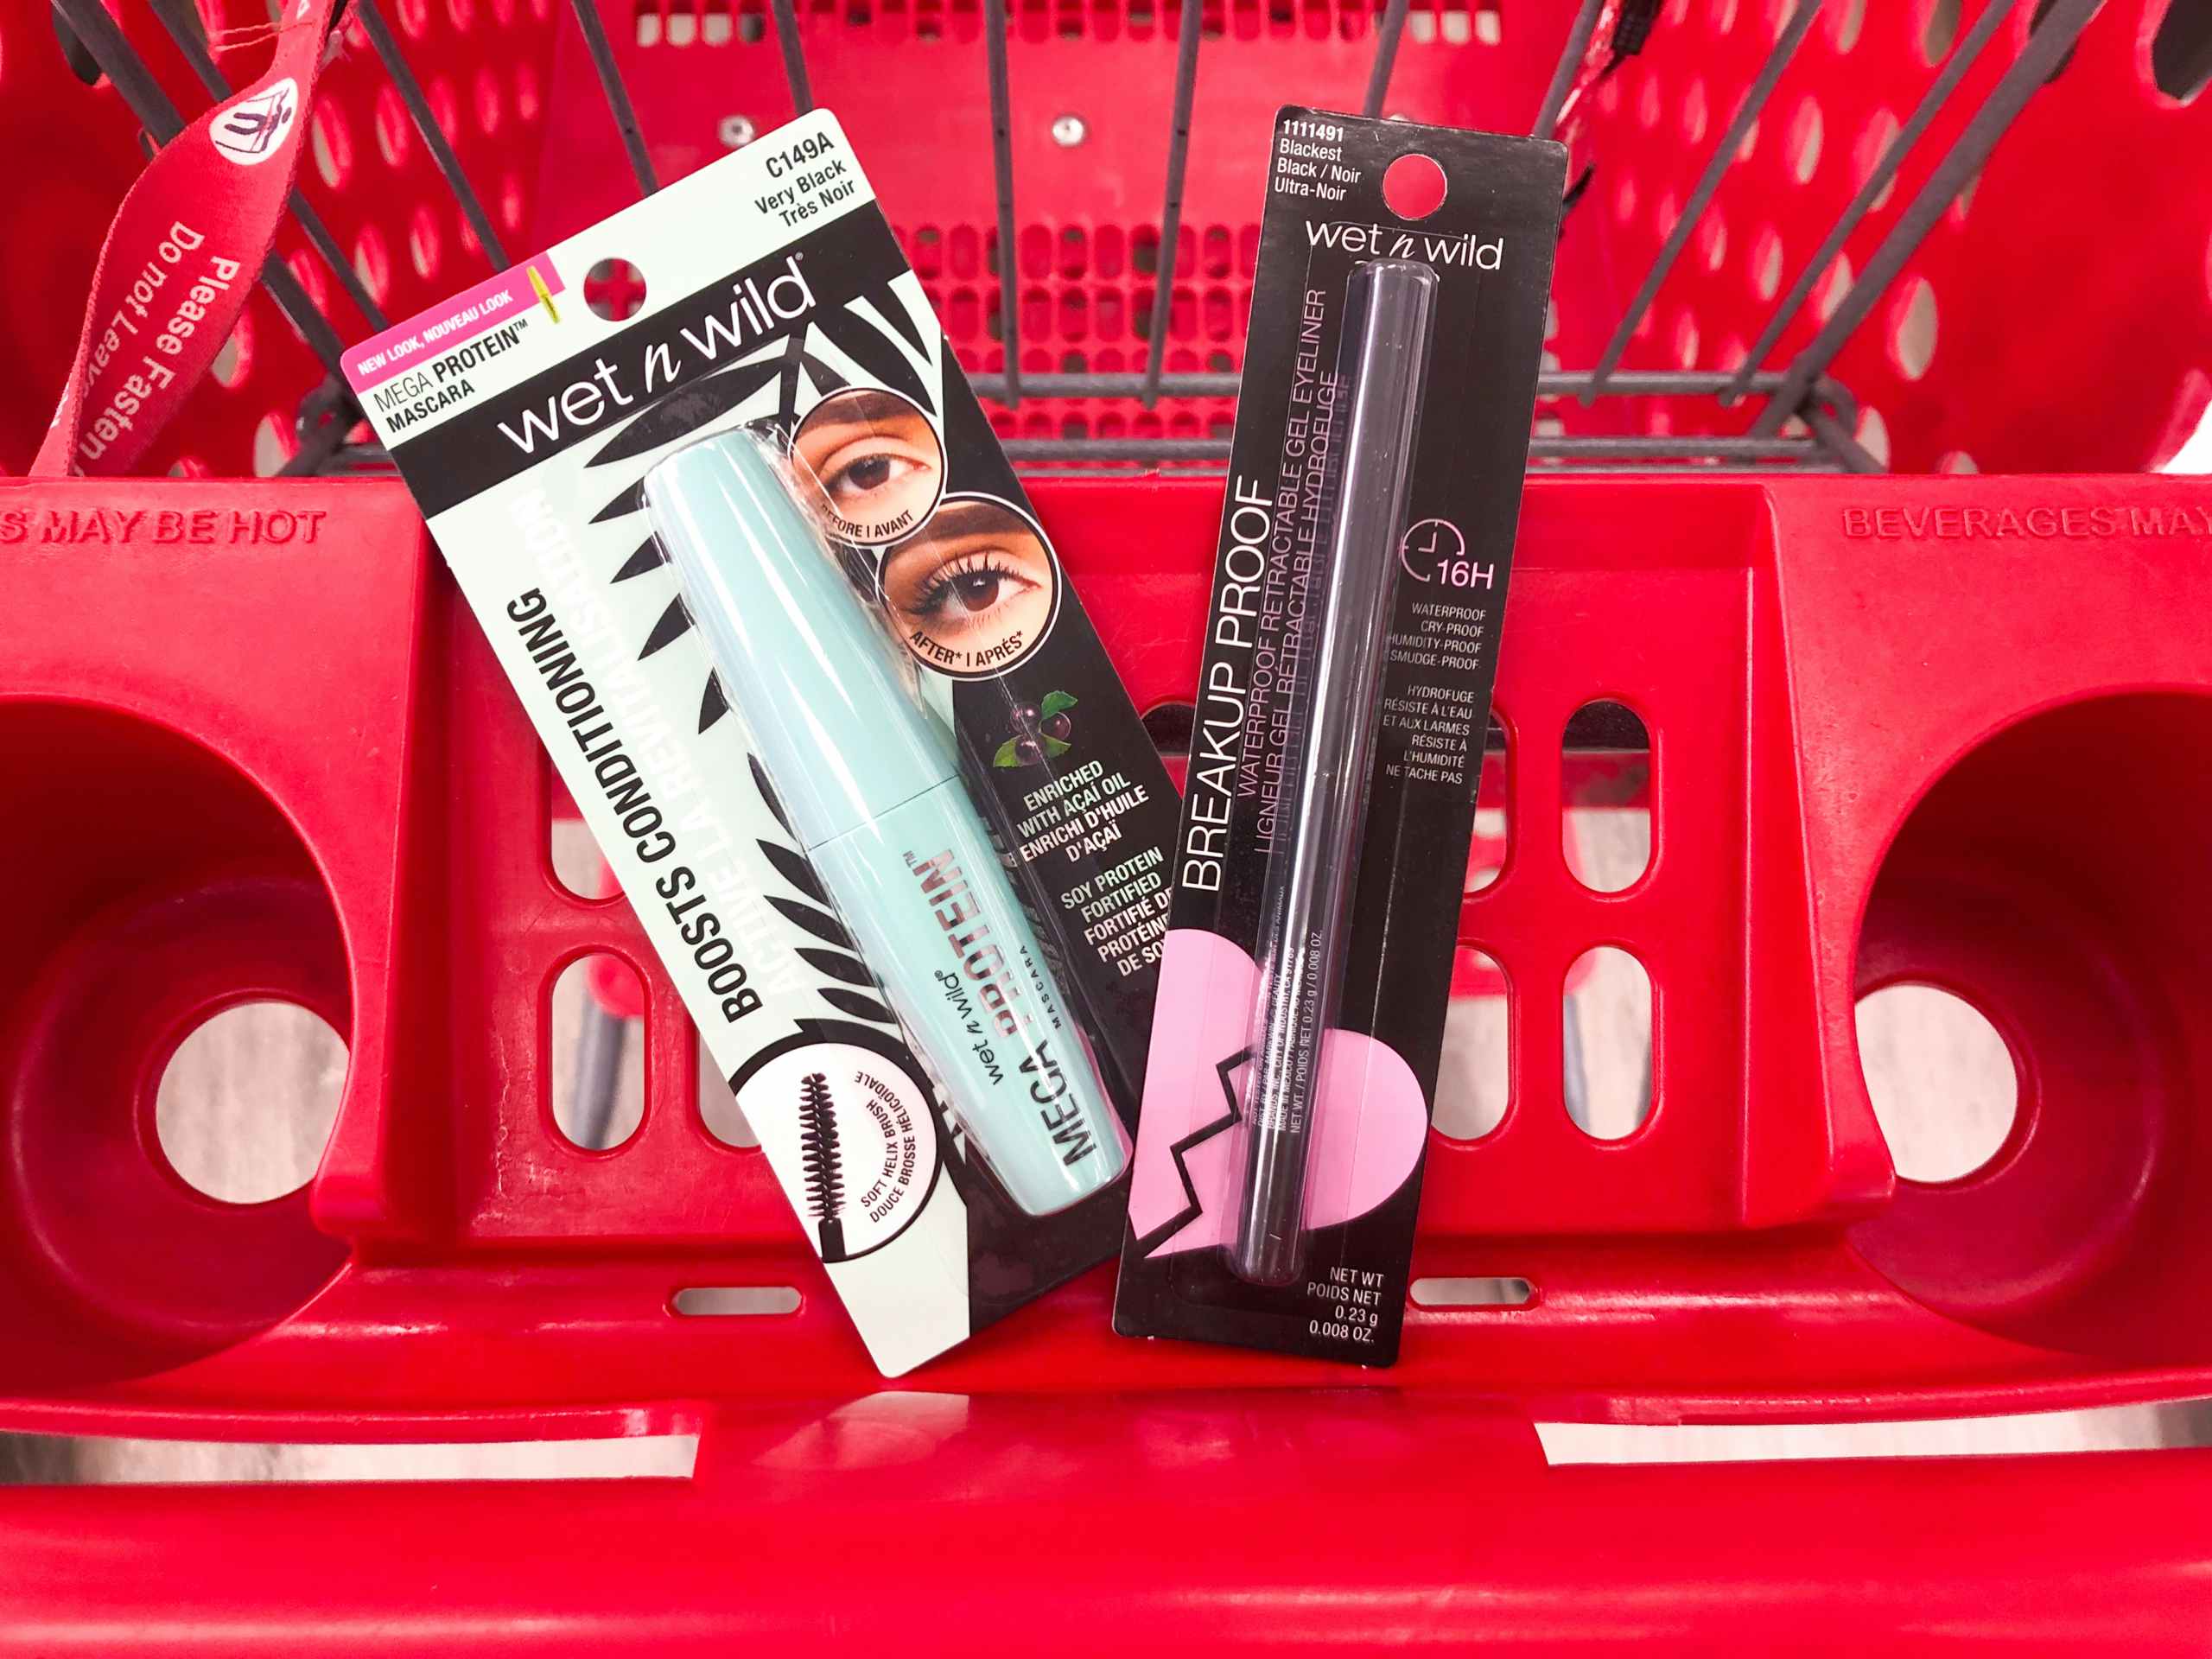 Wet n Wild makeup in Target shopping cart